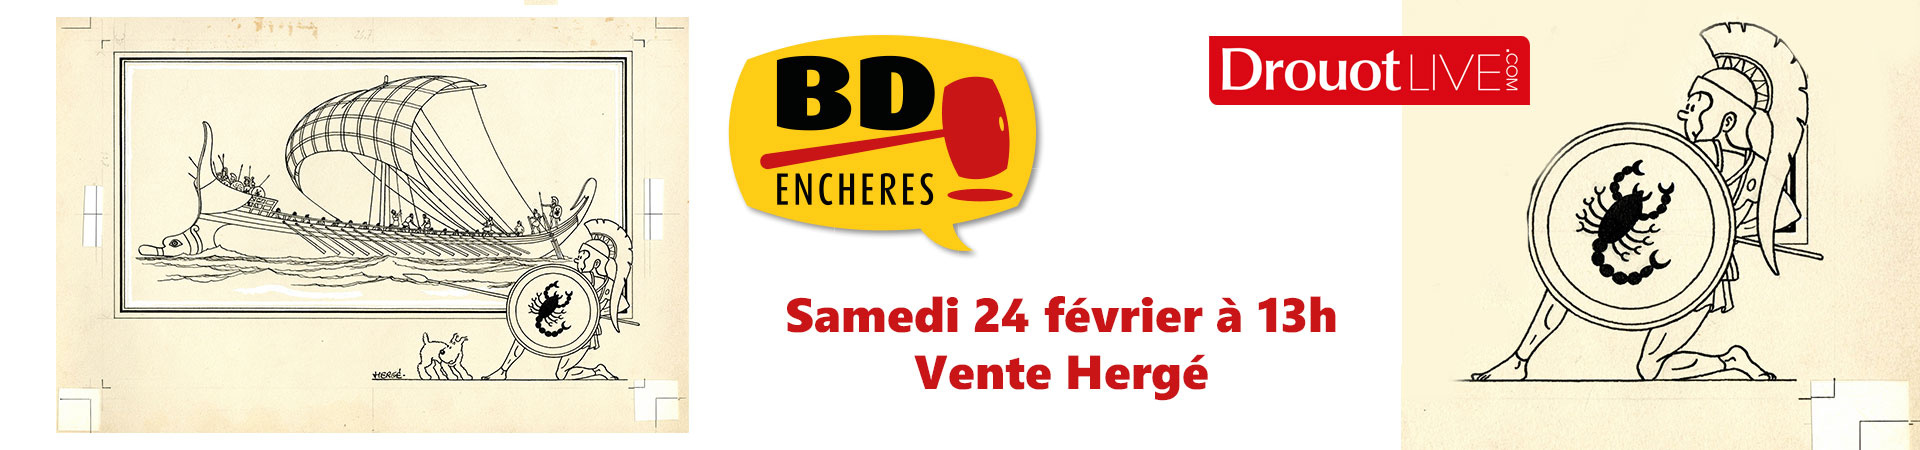 Vente Hergé - BD Enchères